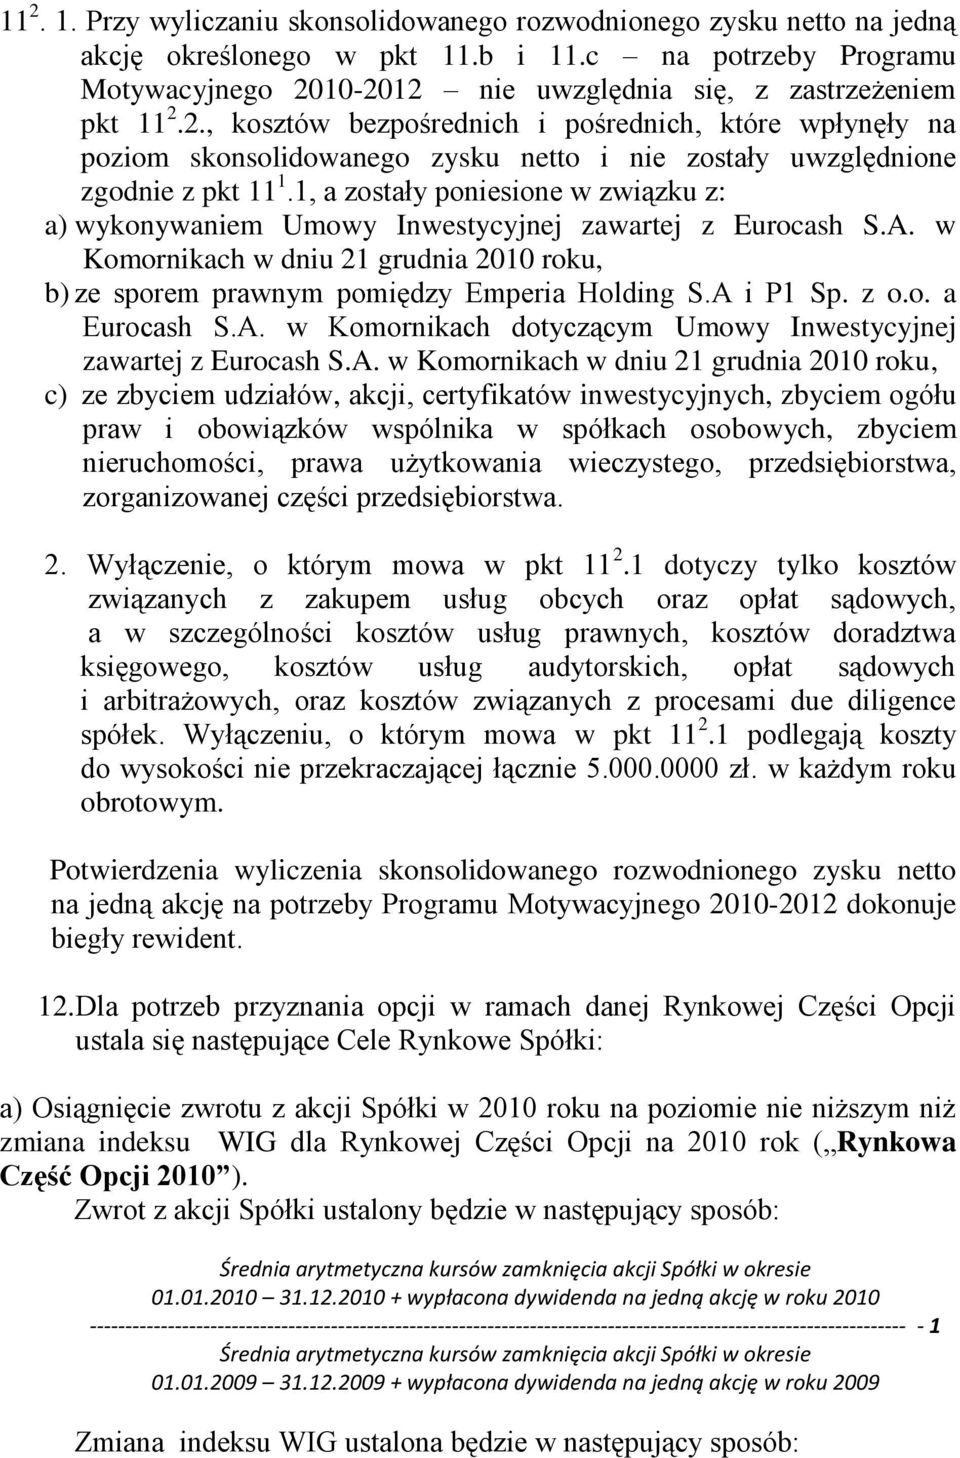 1, a zostały poniesione w związku z: a) wykonywaniem Umowy Inwestycyjnej zawartej z Eurocash S.A. w Komornikach w dniu 21 grudnia 2010 roku, b) ze sporem prawnym pomiędzy Emperia Holding S.A i P1 Sp.